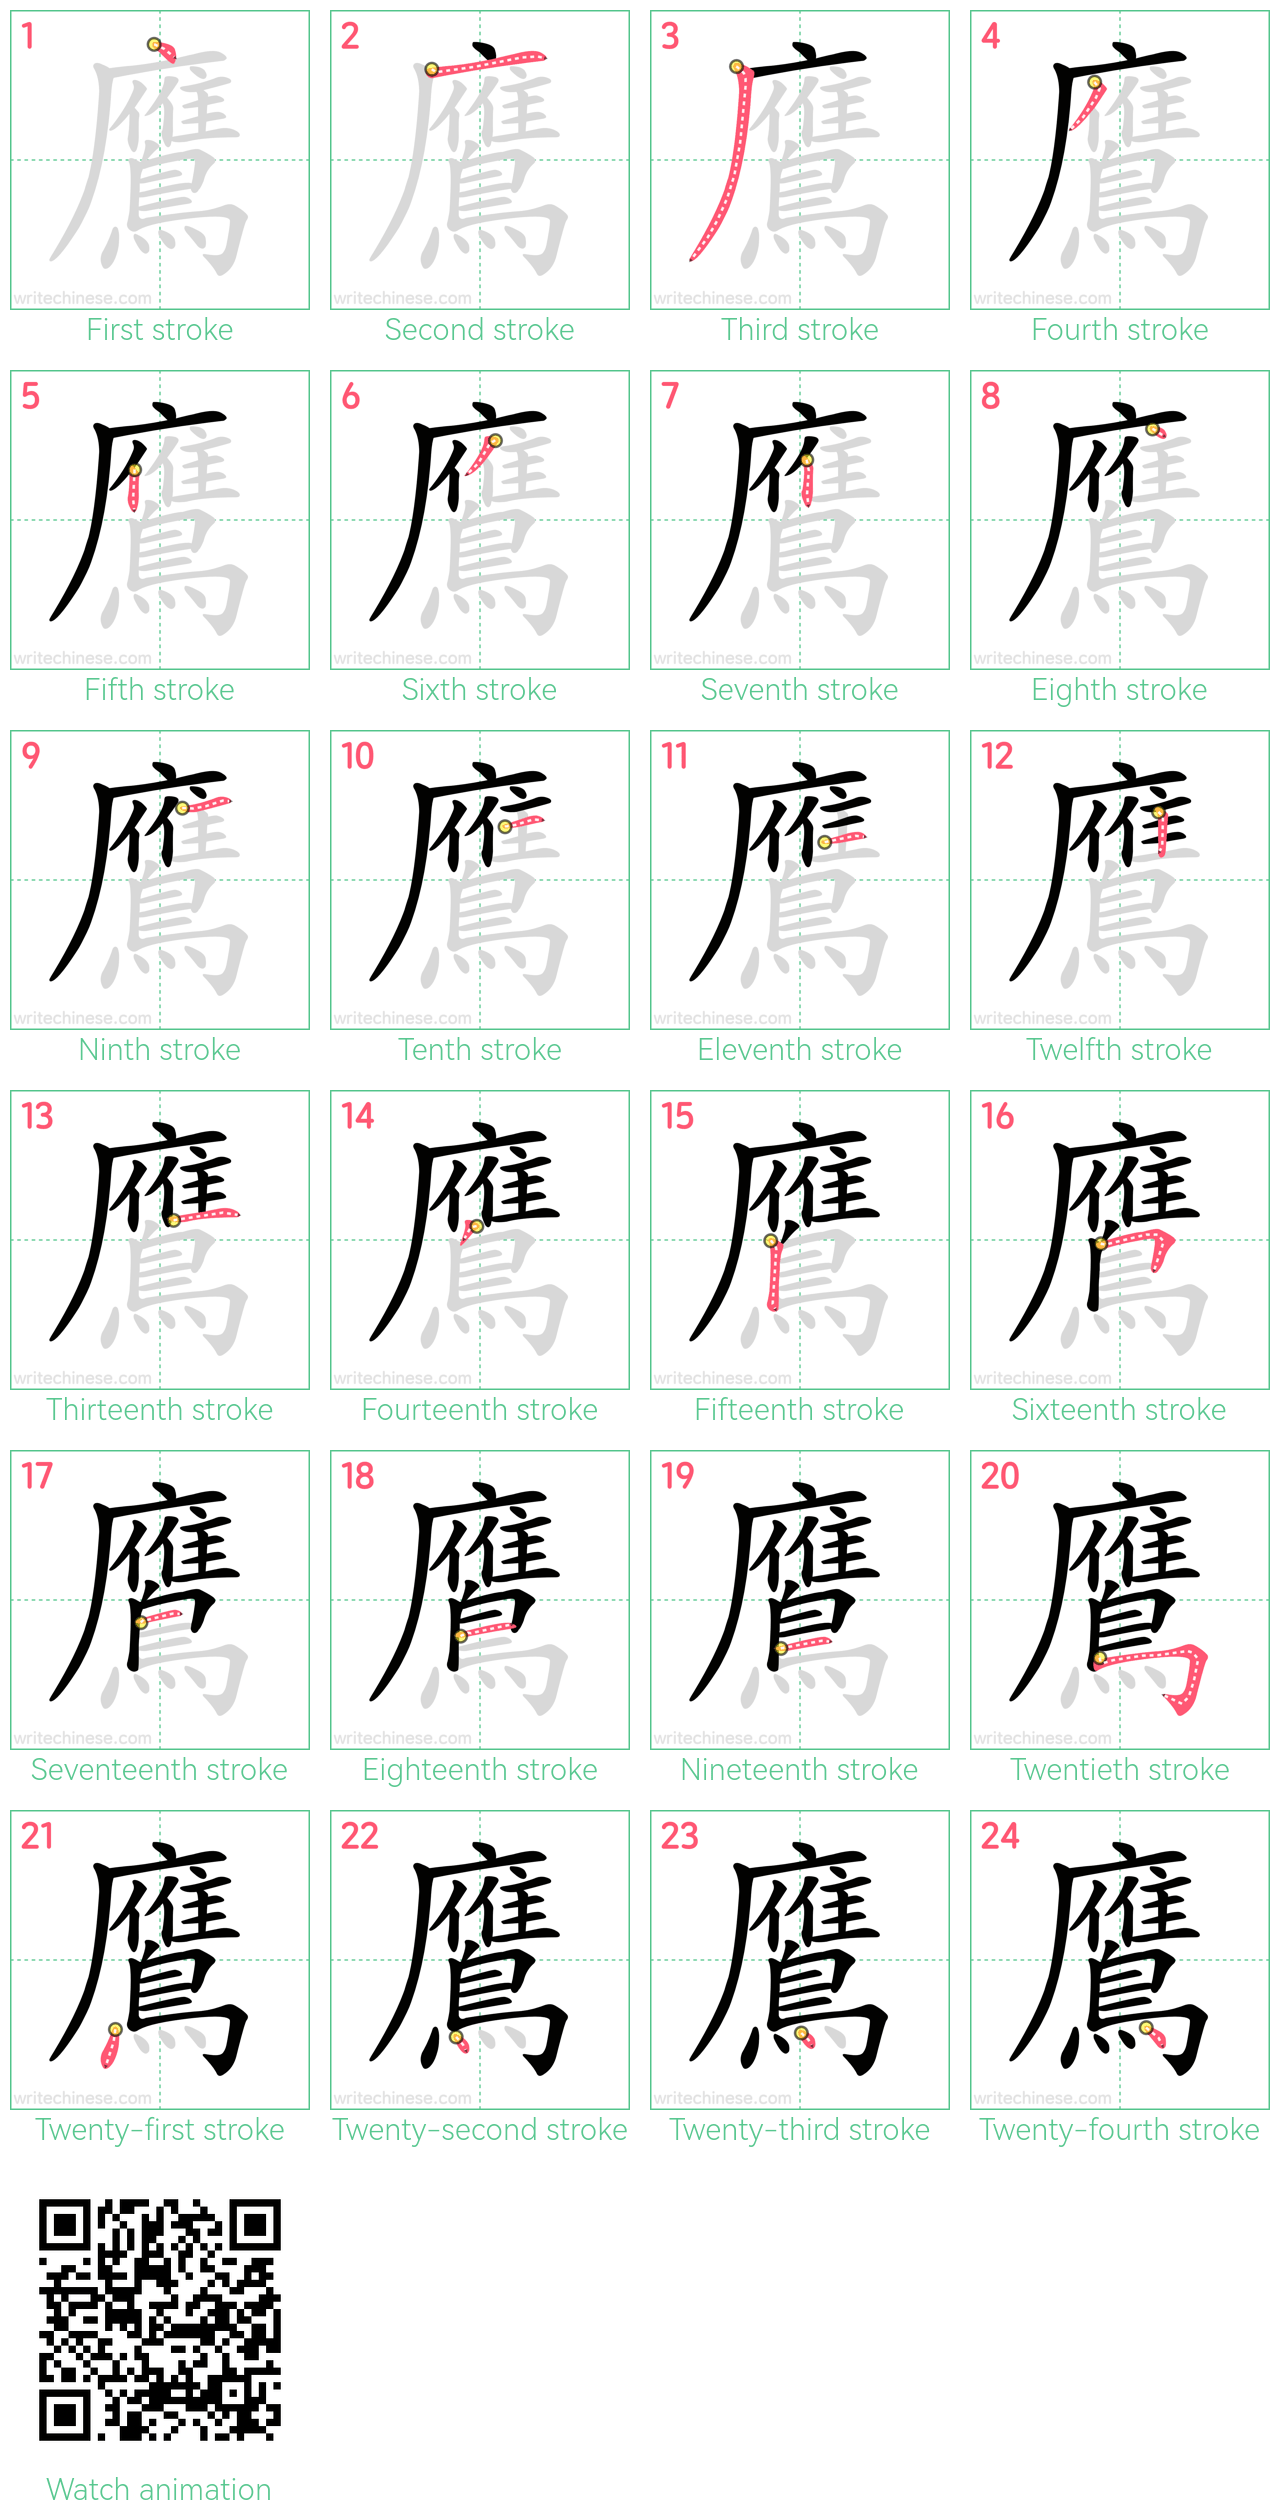 鷹 step-by-step stroke order diagrams